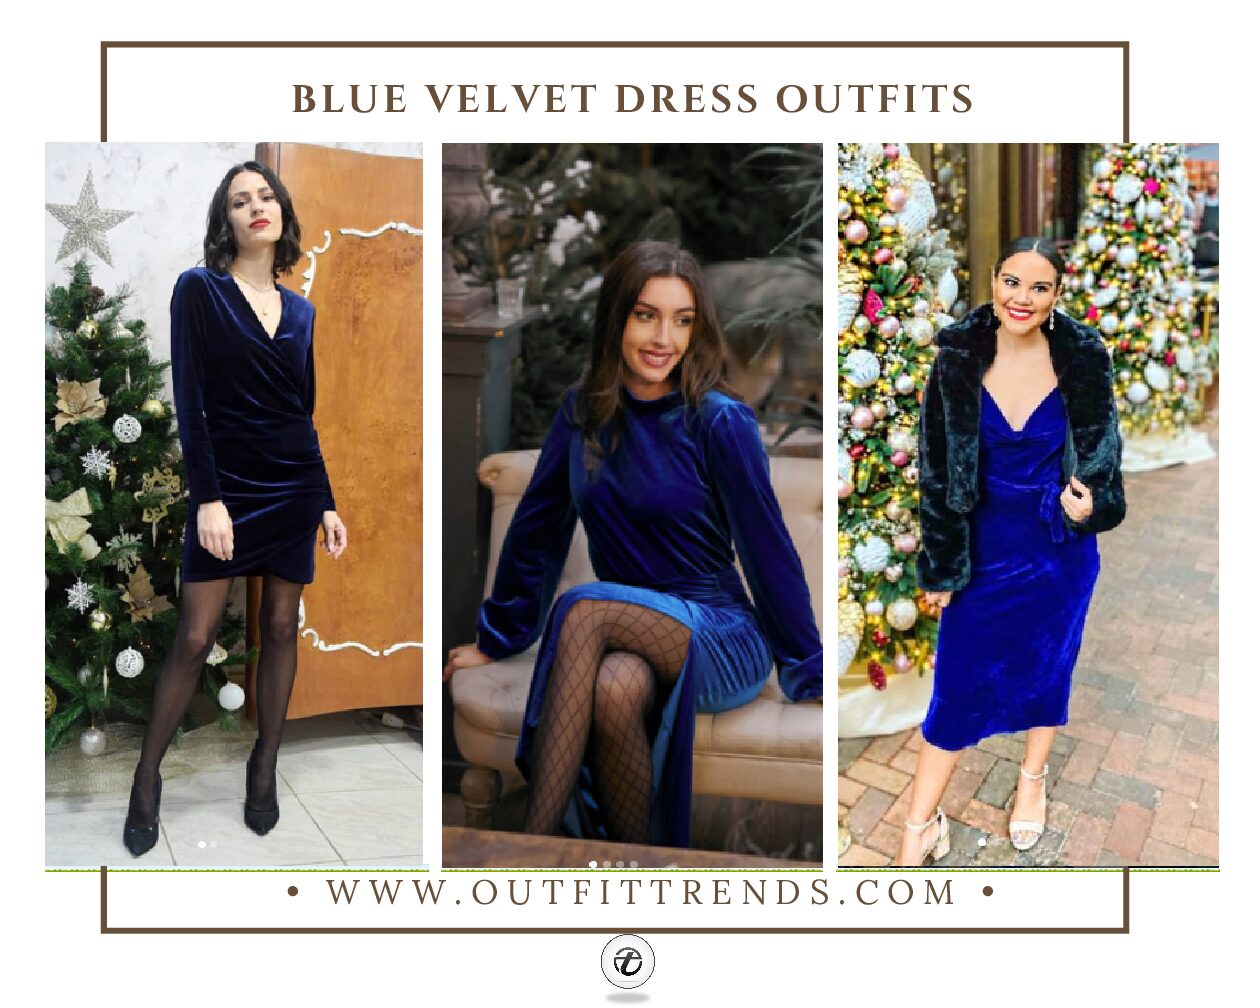 How To Wear Blue Velvet Dresses – 20 Ways To Style Blue Velvet Dresses In 2022